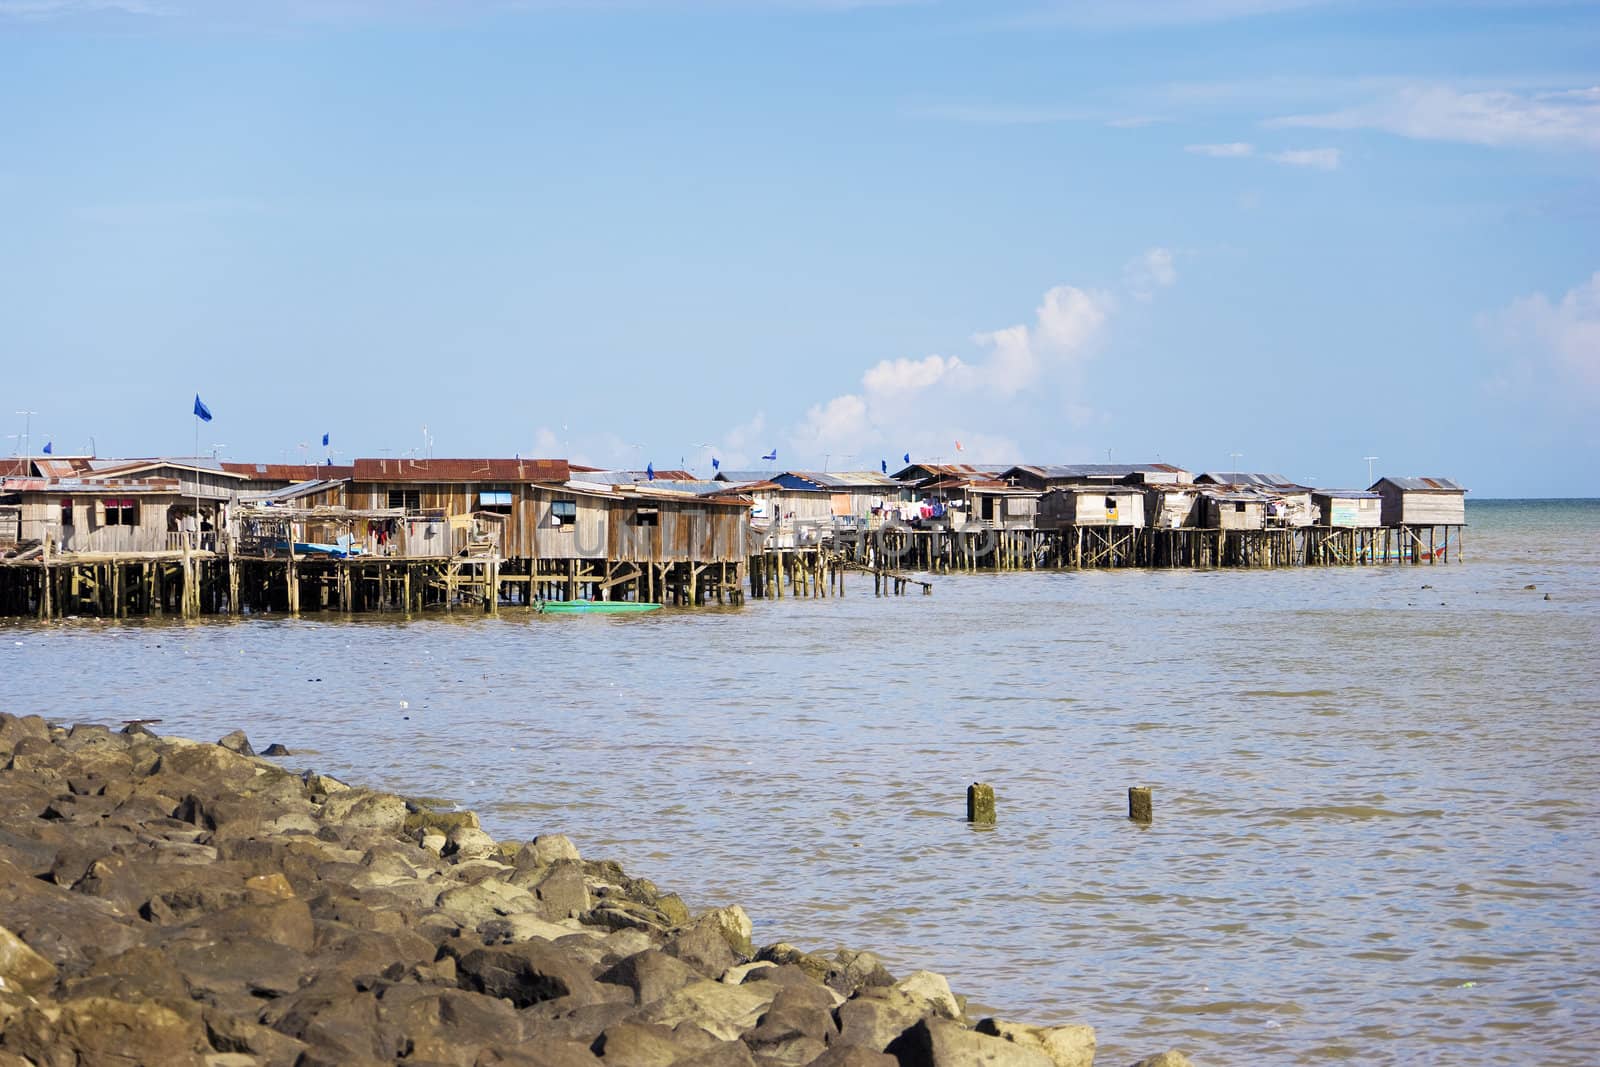 Image of coastal slums located at Tawau, Malaysia.